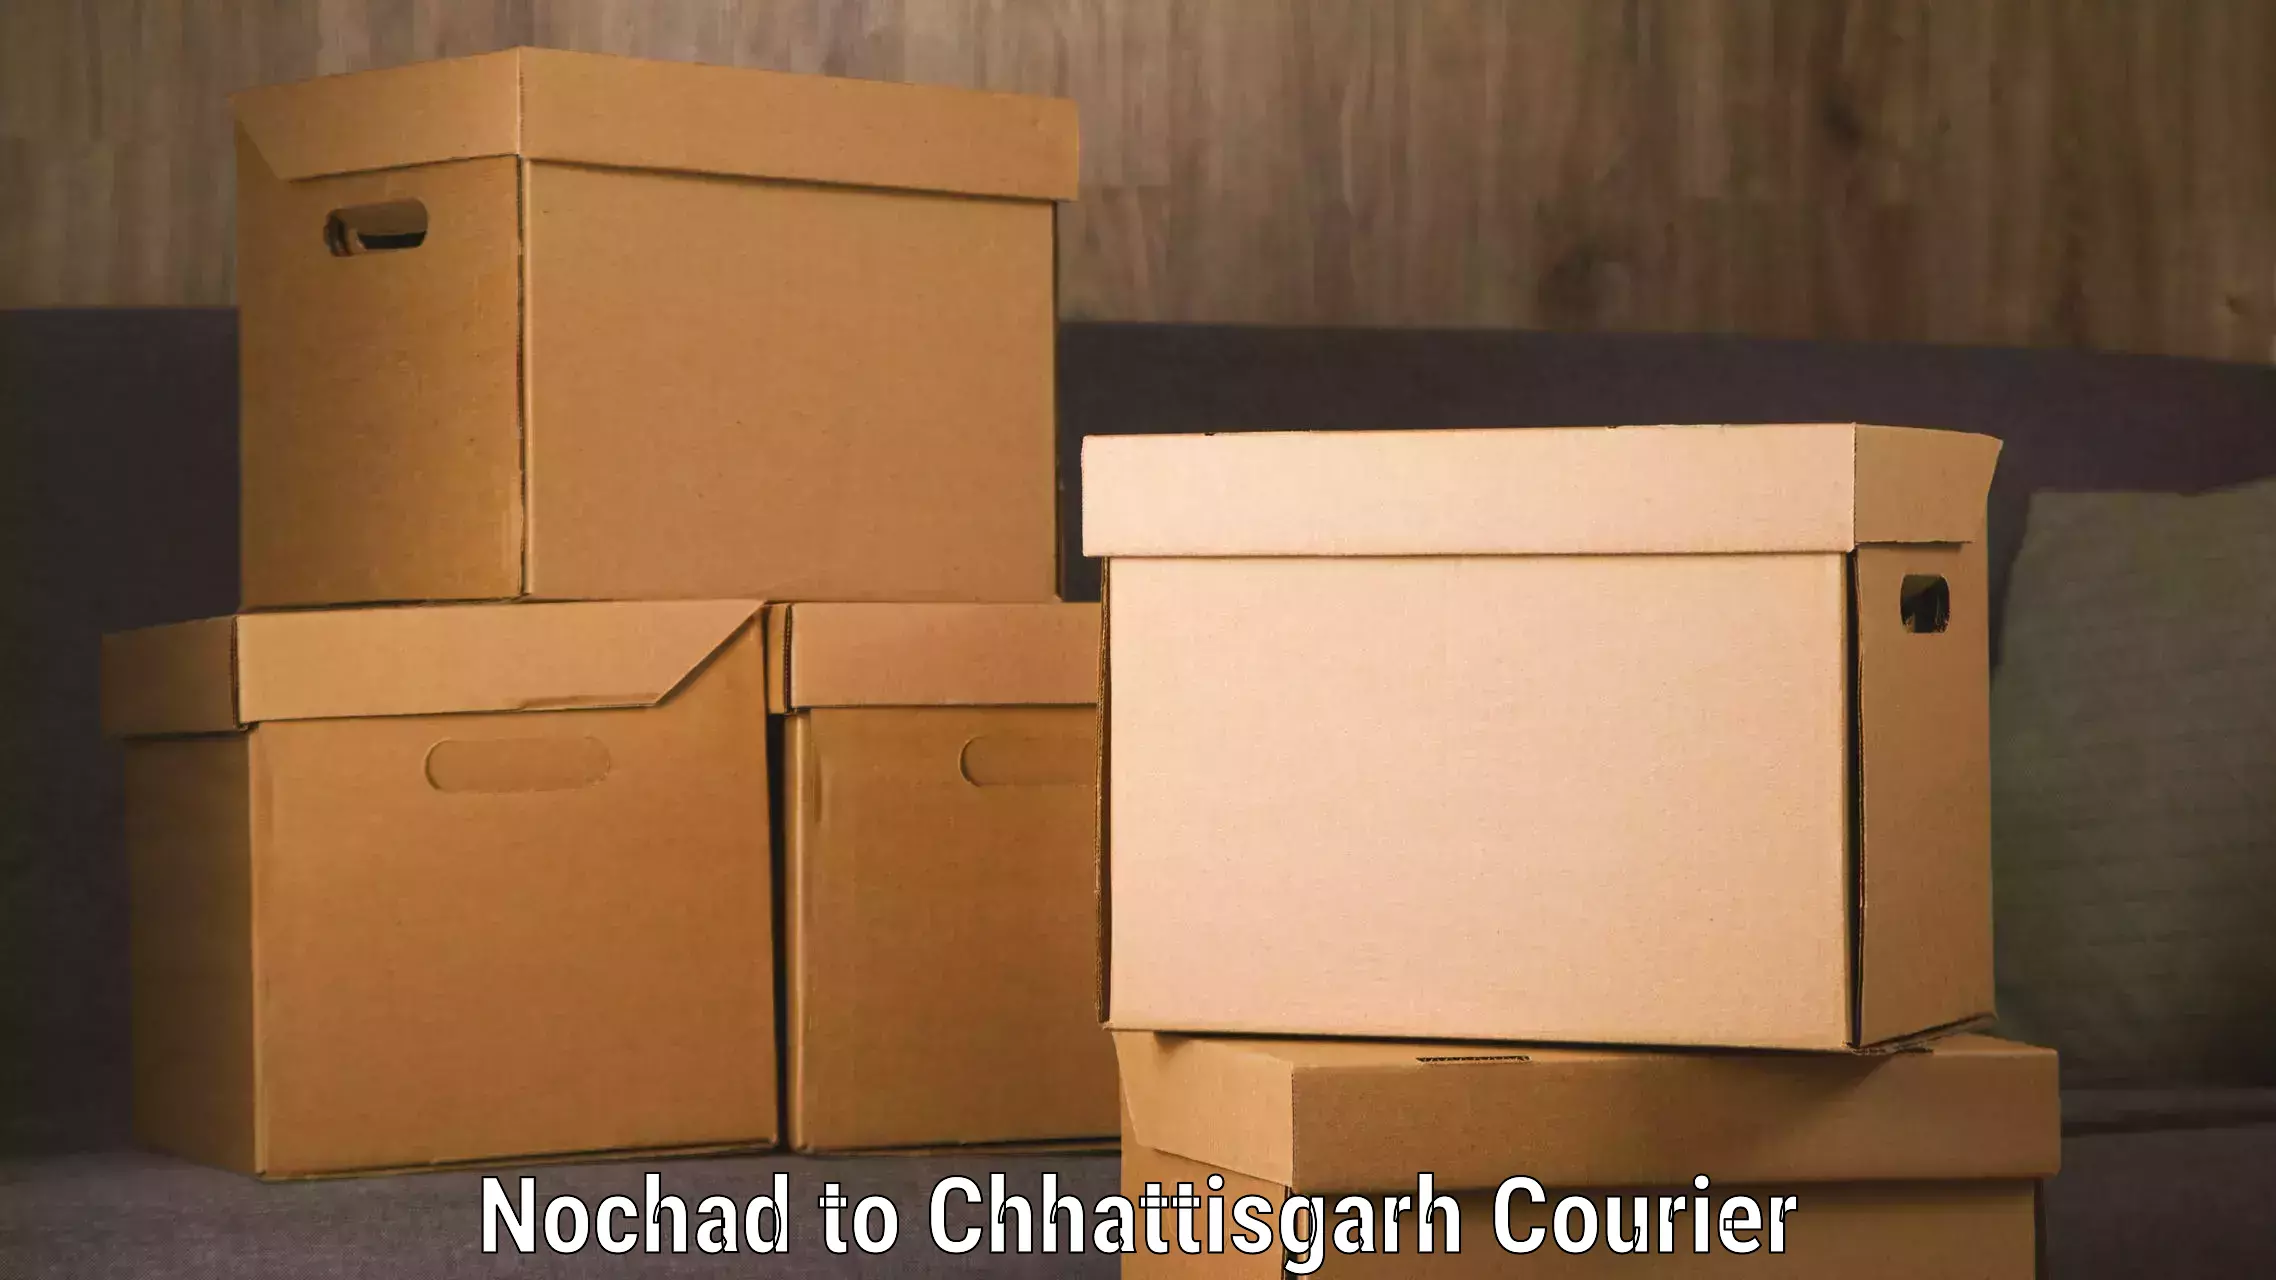 Cross-border shipping Nochad to Bijapur Chhattisgarh